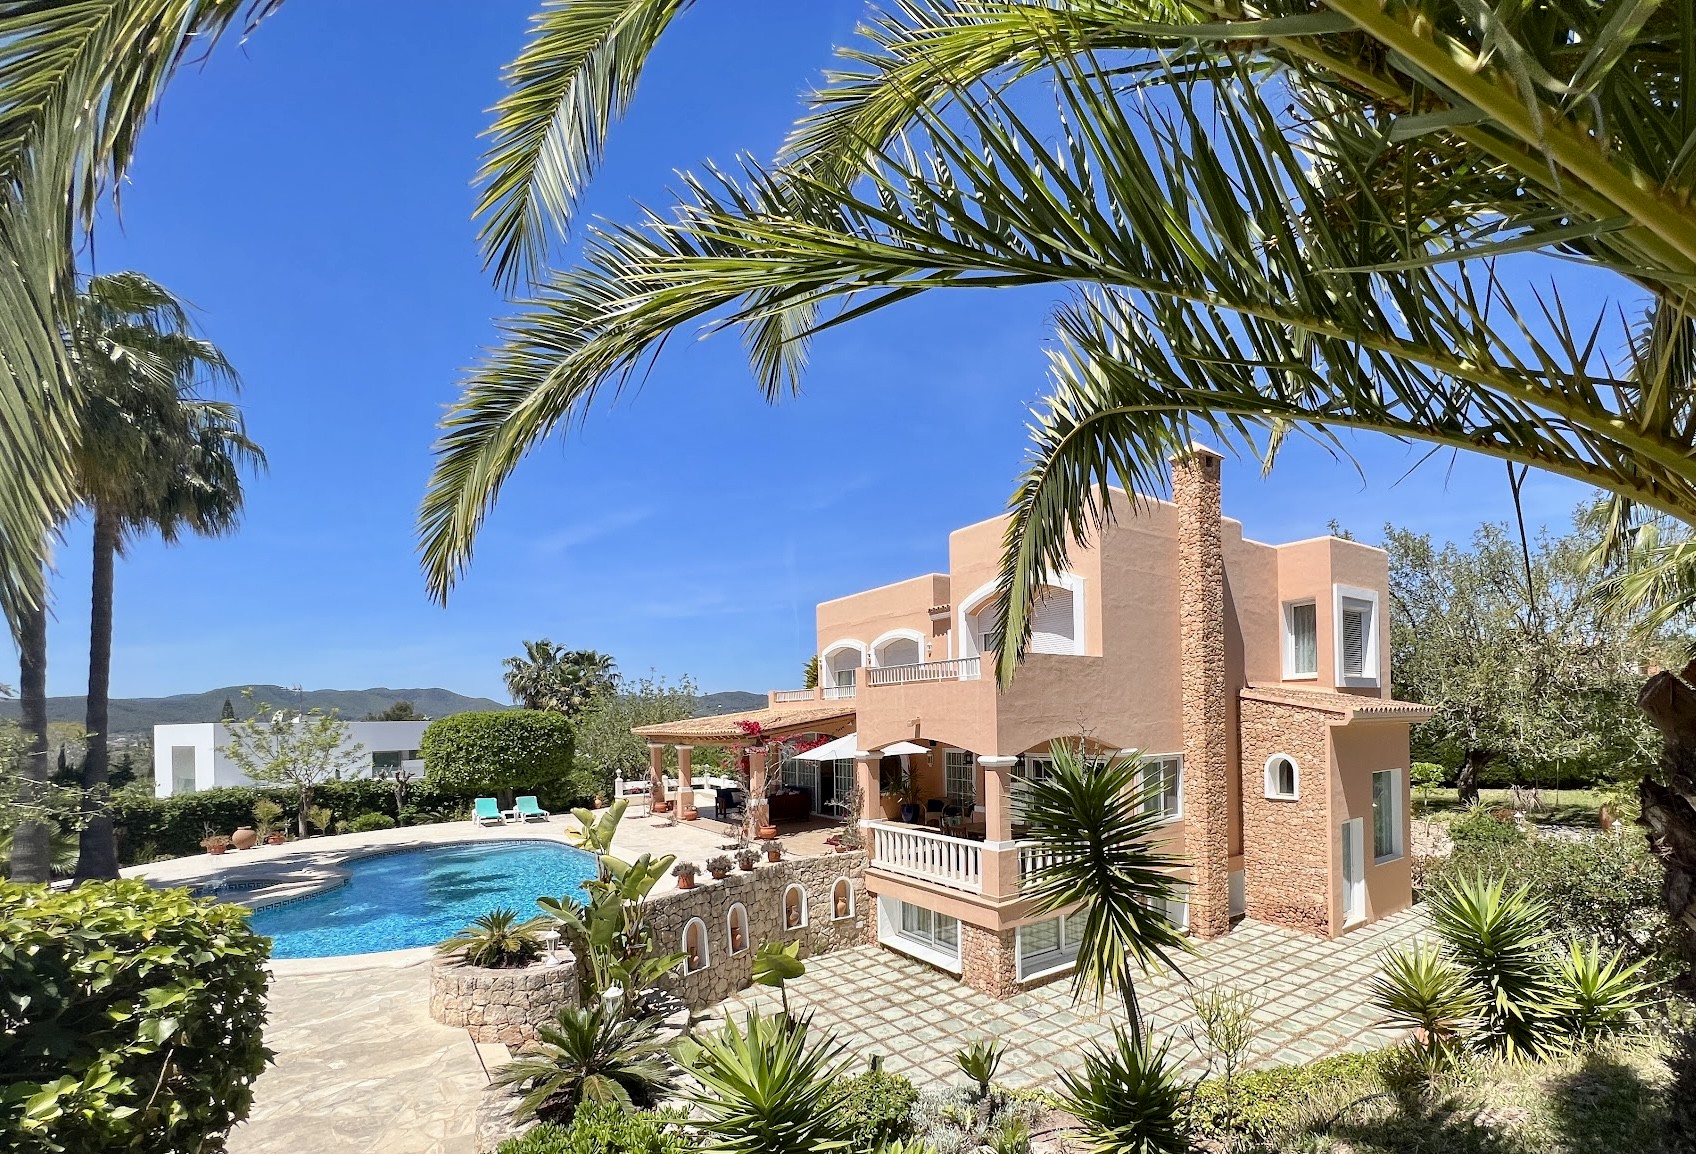 Generosa casa familiar de estilo mediterráneo cerca de Ibiza centro - 1